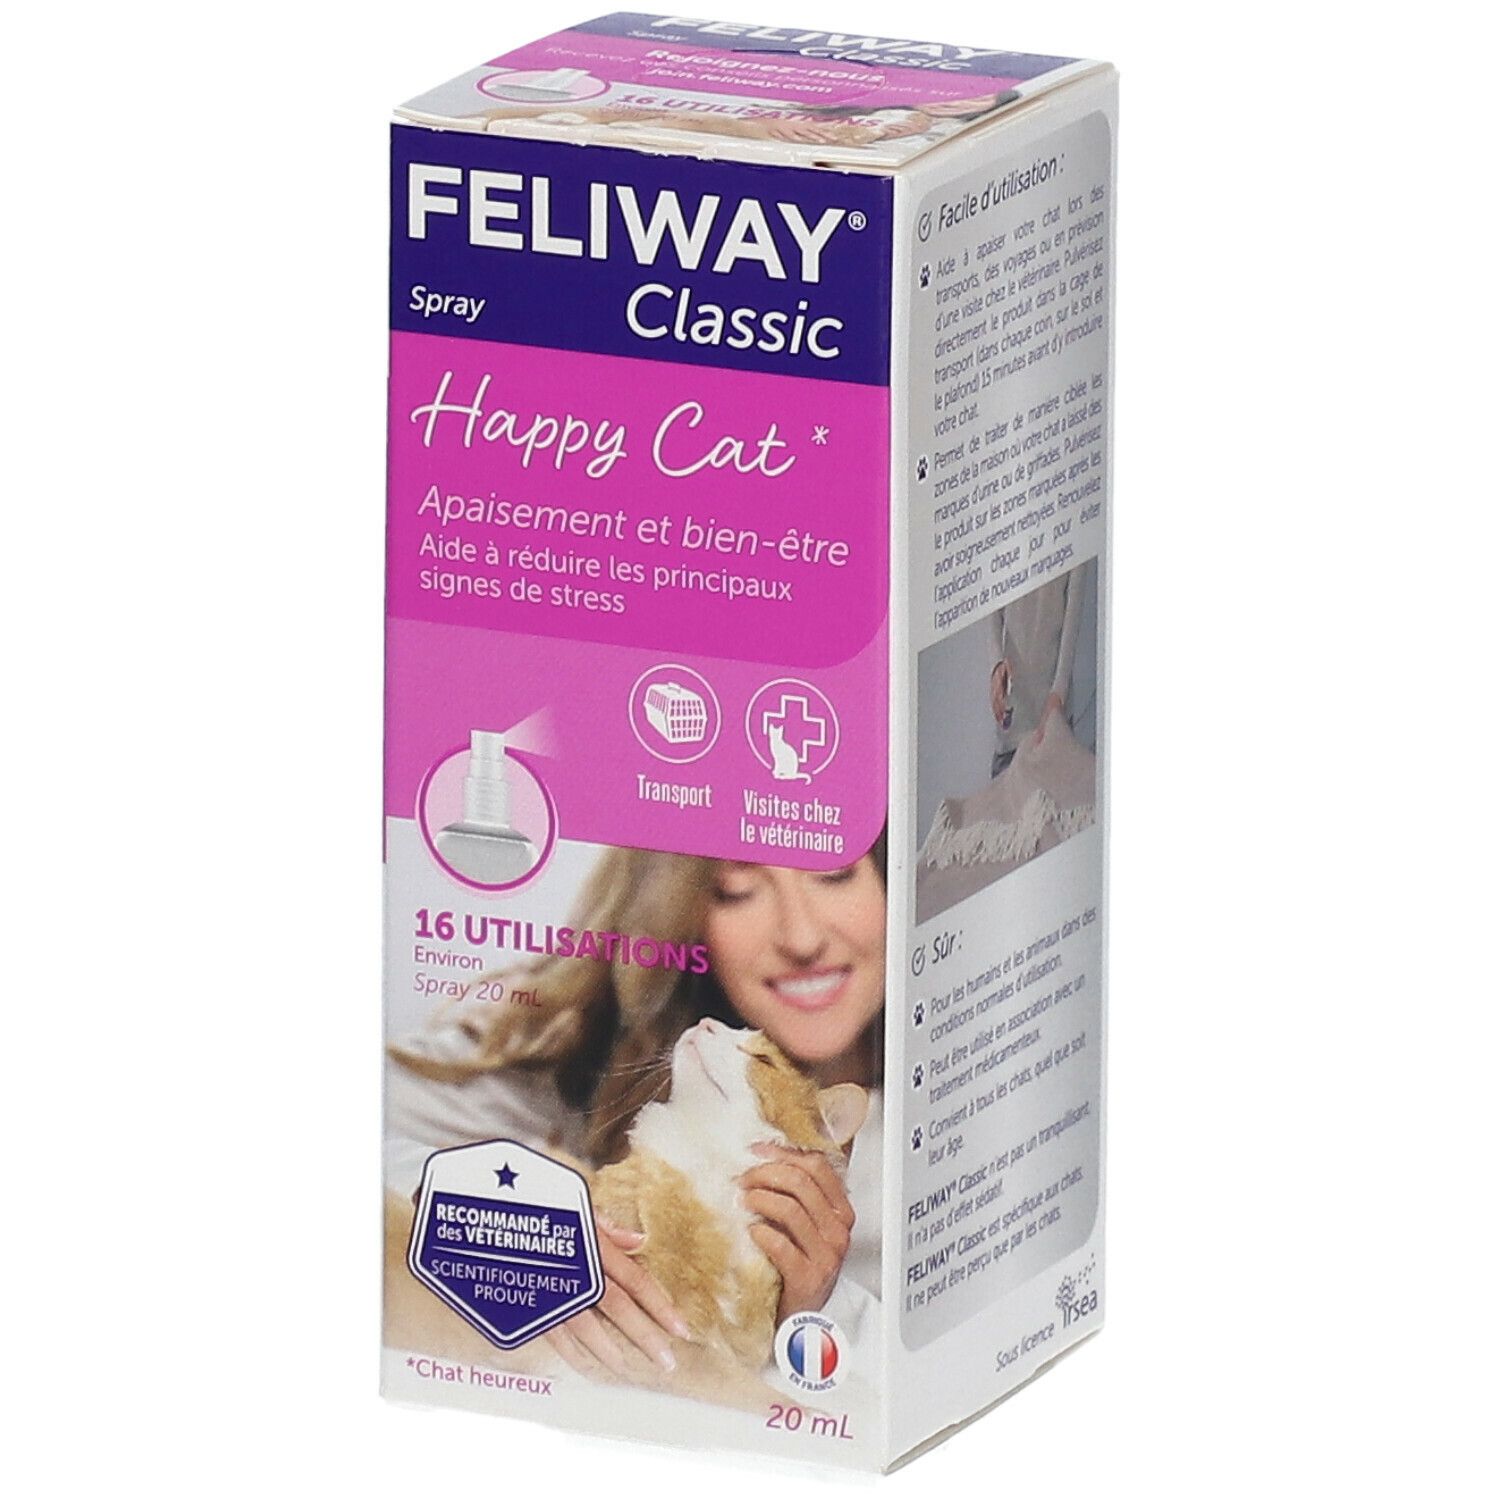 Feliway® Classic Spray